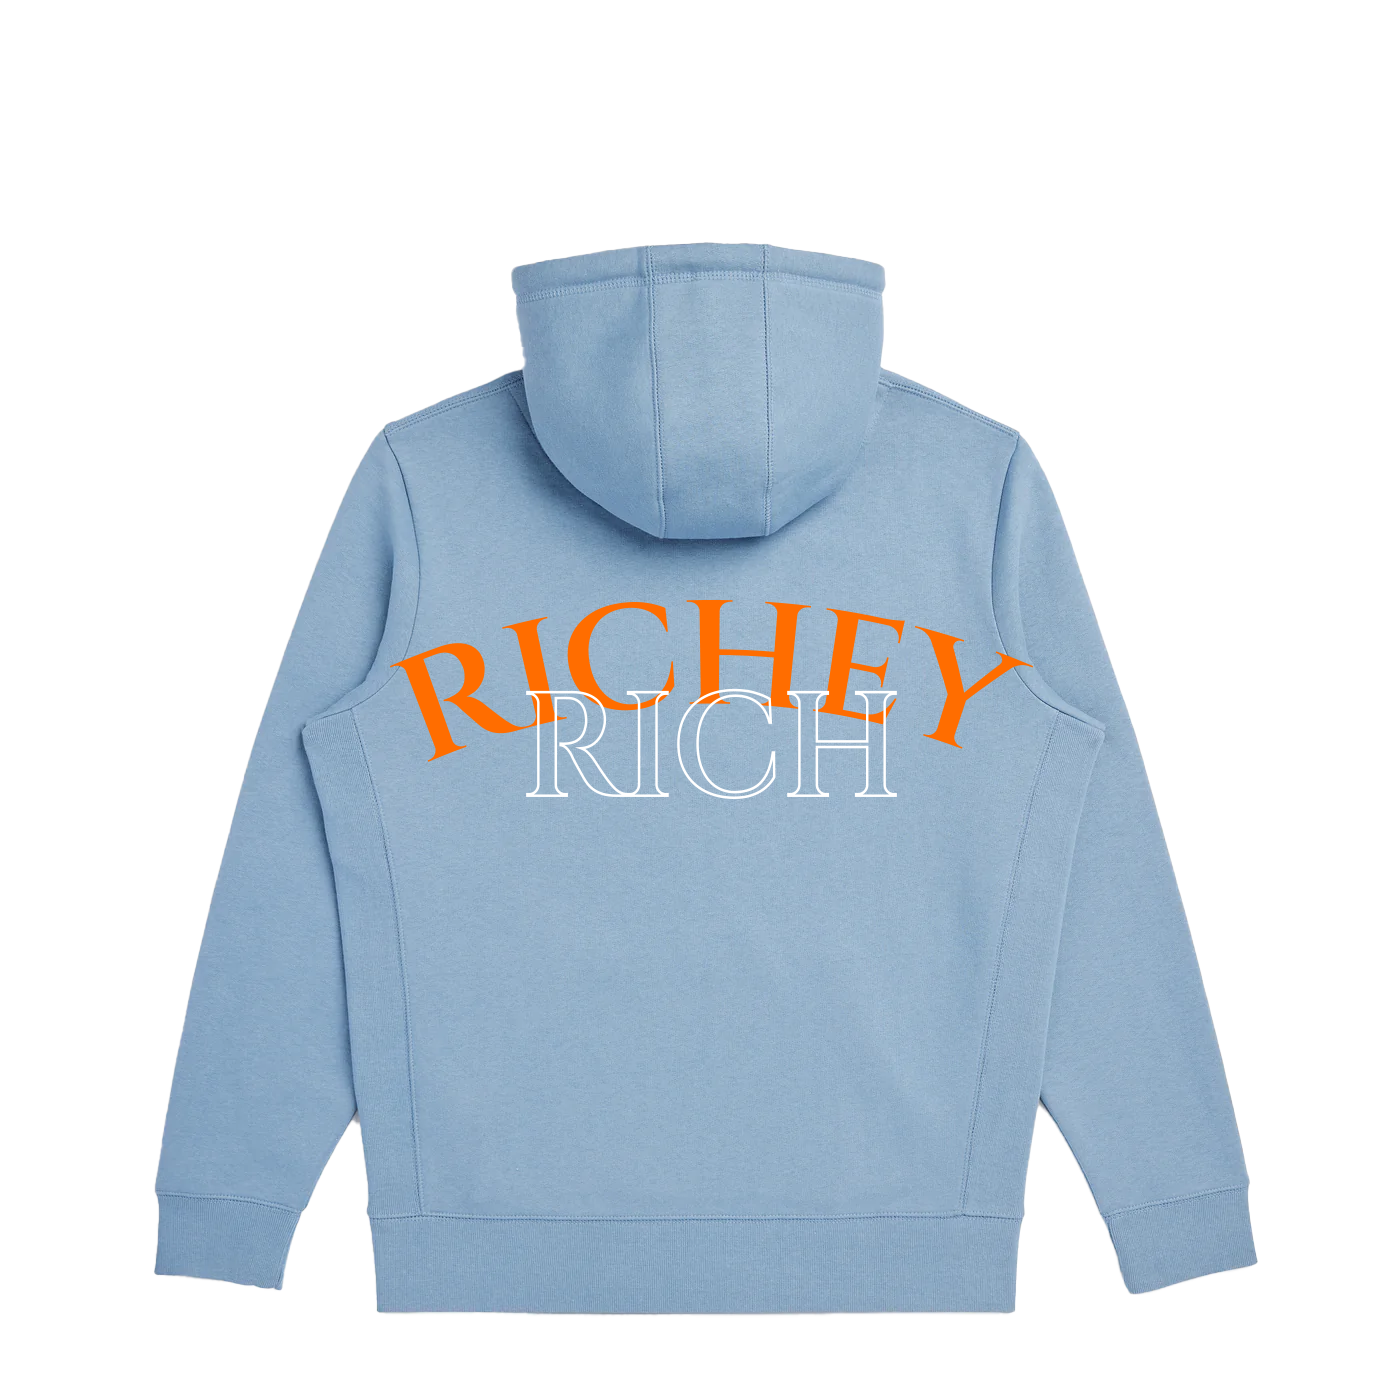 Richey Rich SR Hooded Sweatshirt - Cloudy Blue